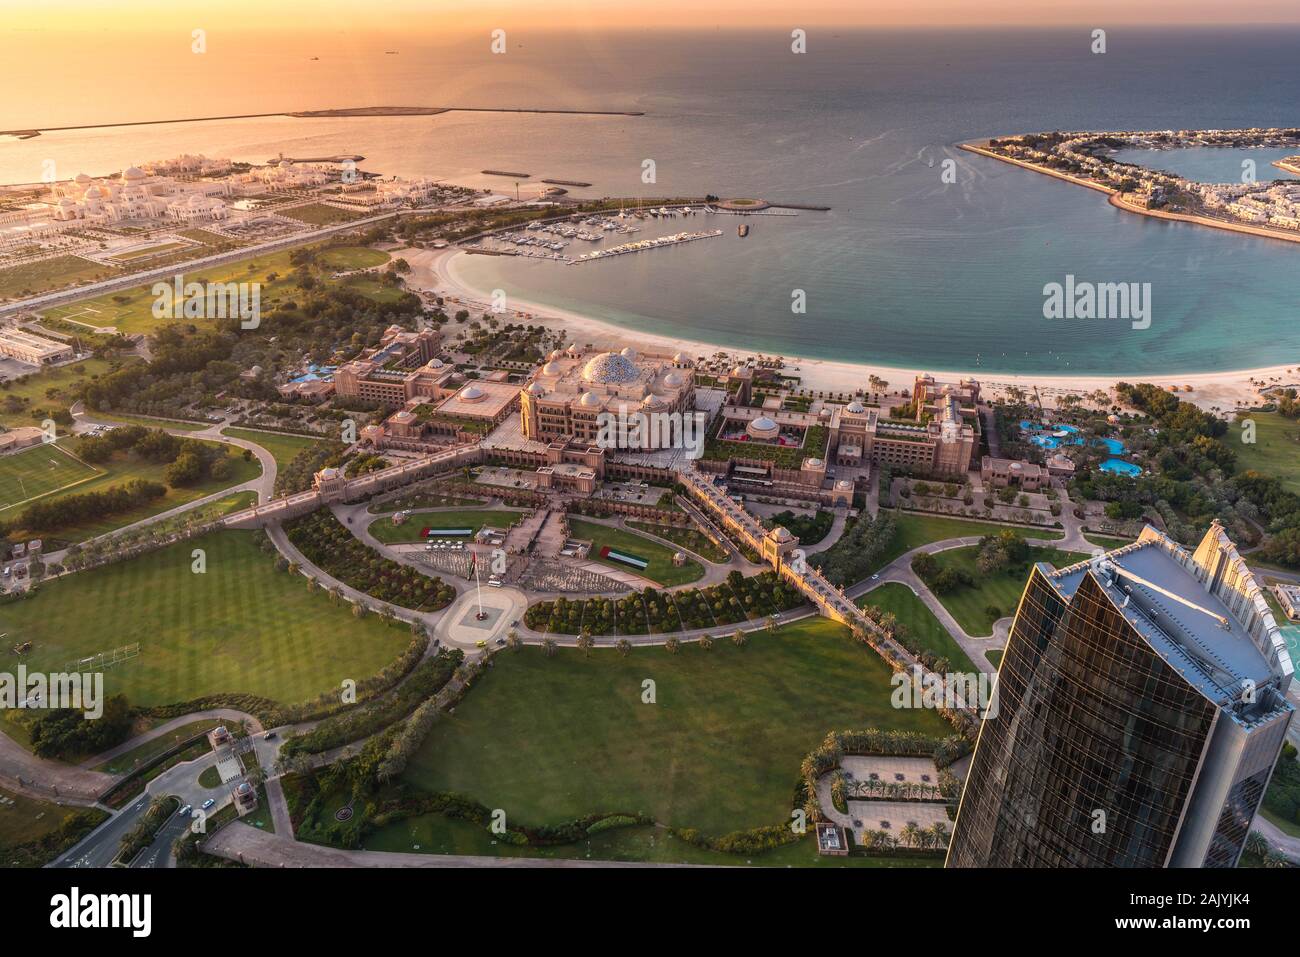 Abu Dhabi, Emirats Arabes Unis : belle vue aérienne du pont d'observation à 300, Etihad towers, Emirates Palace et Al Marina Village Banque D'Images